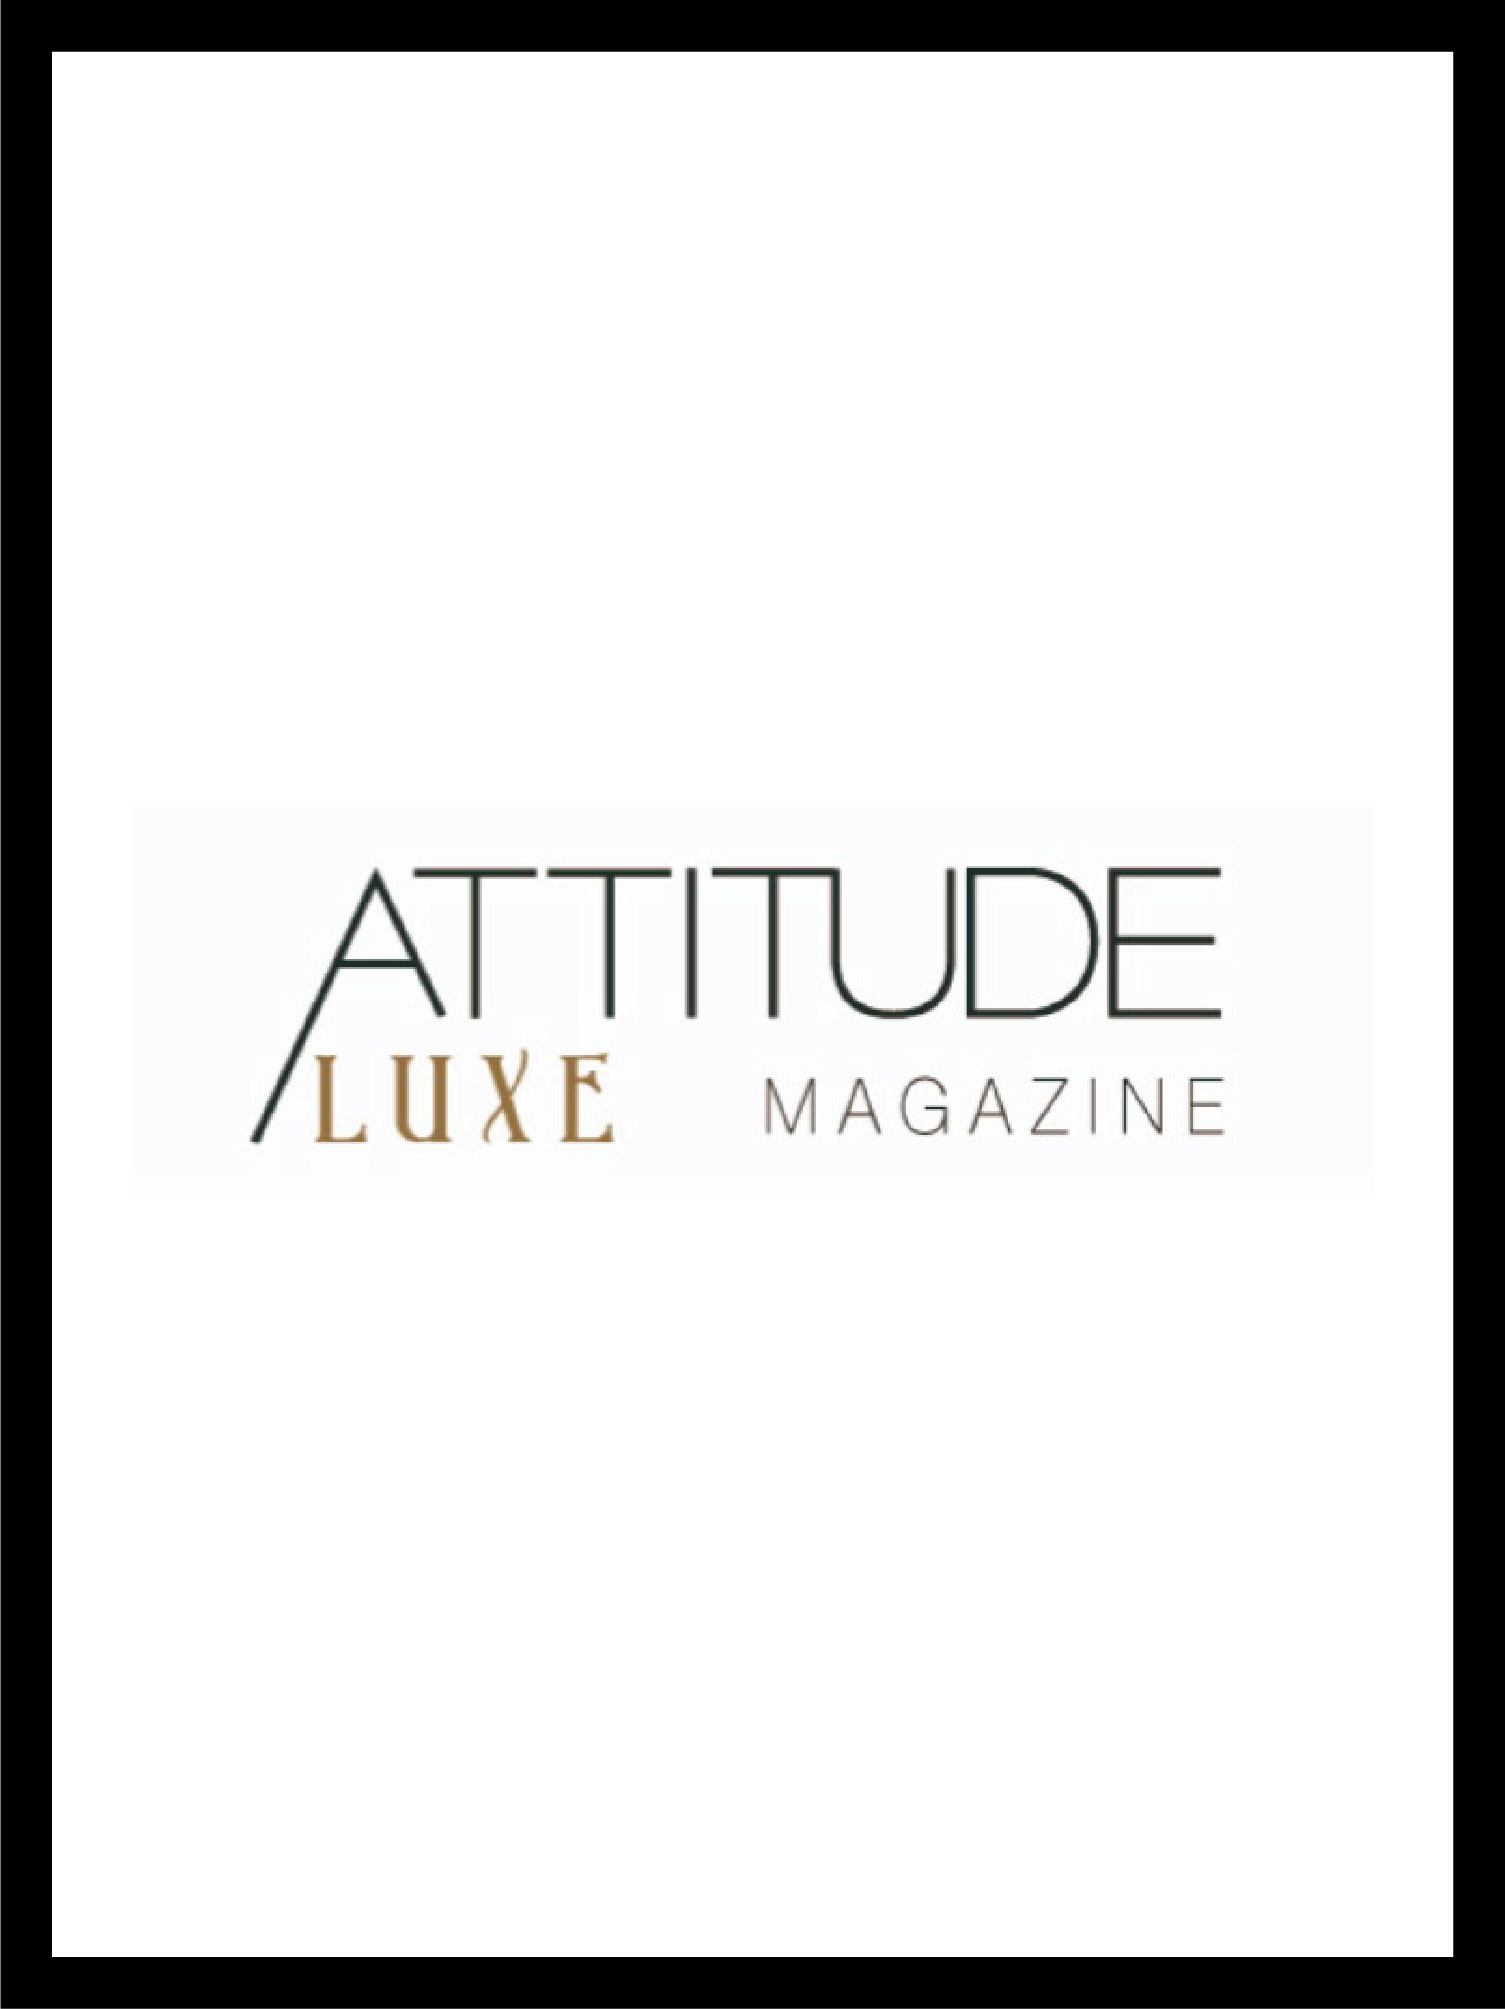 attitude luxe magazine cover and logo